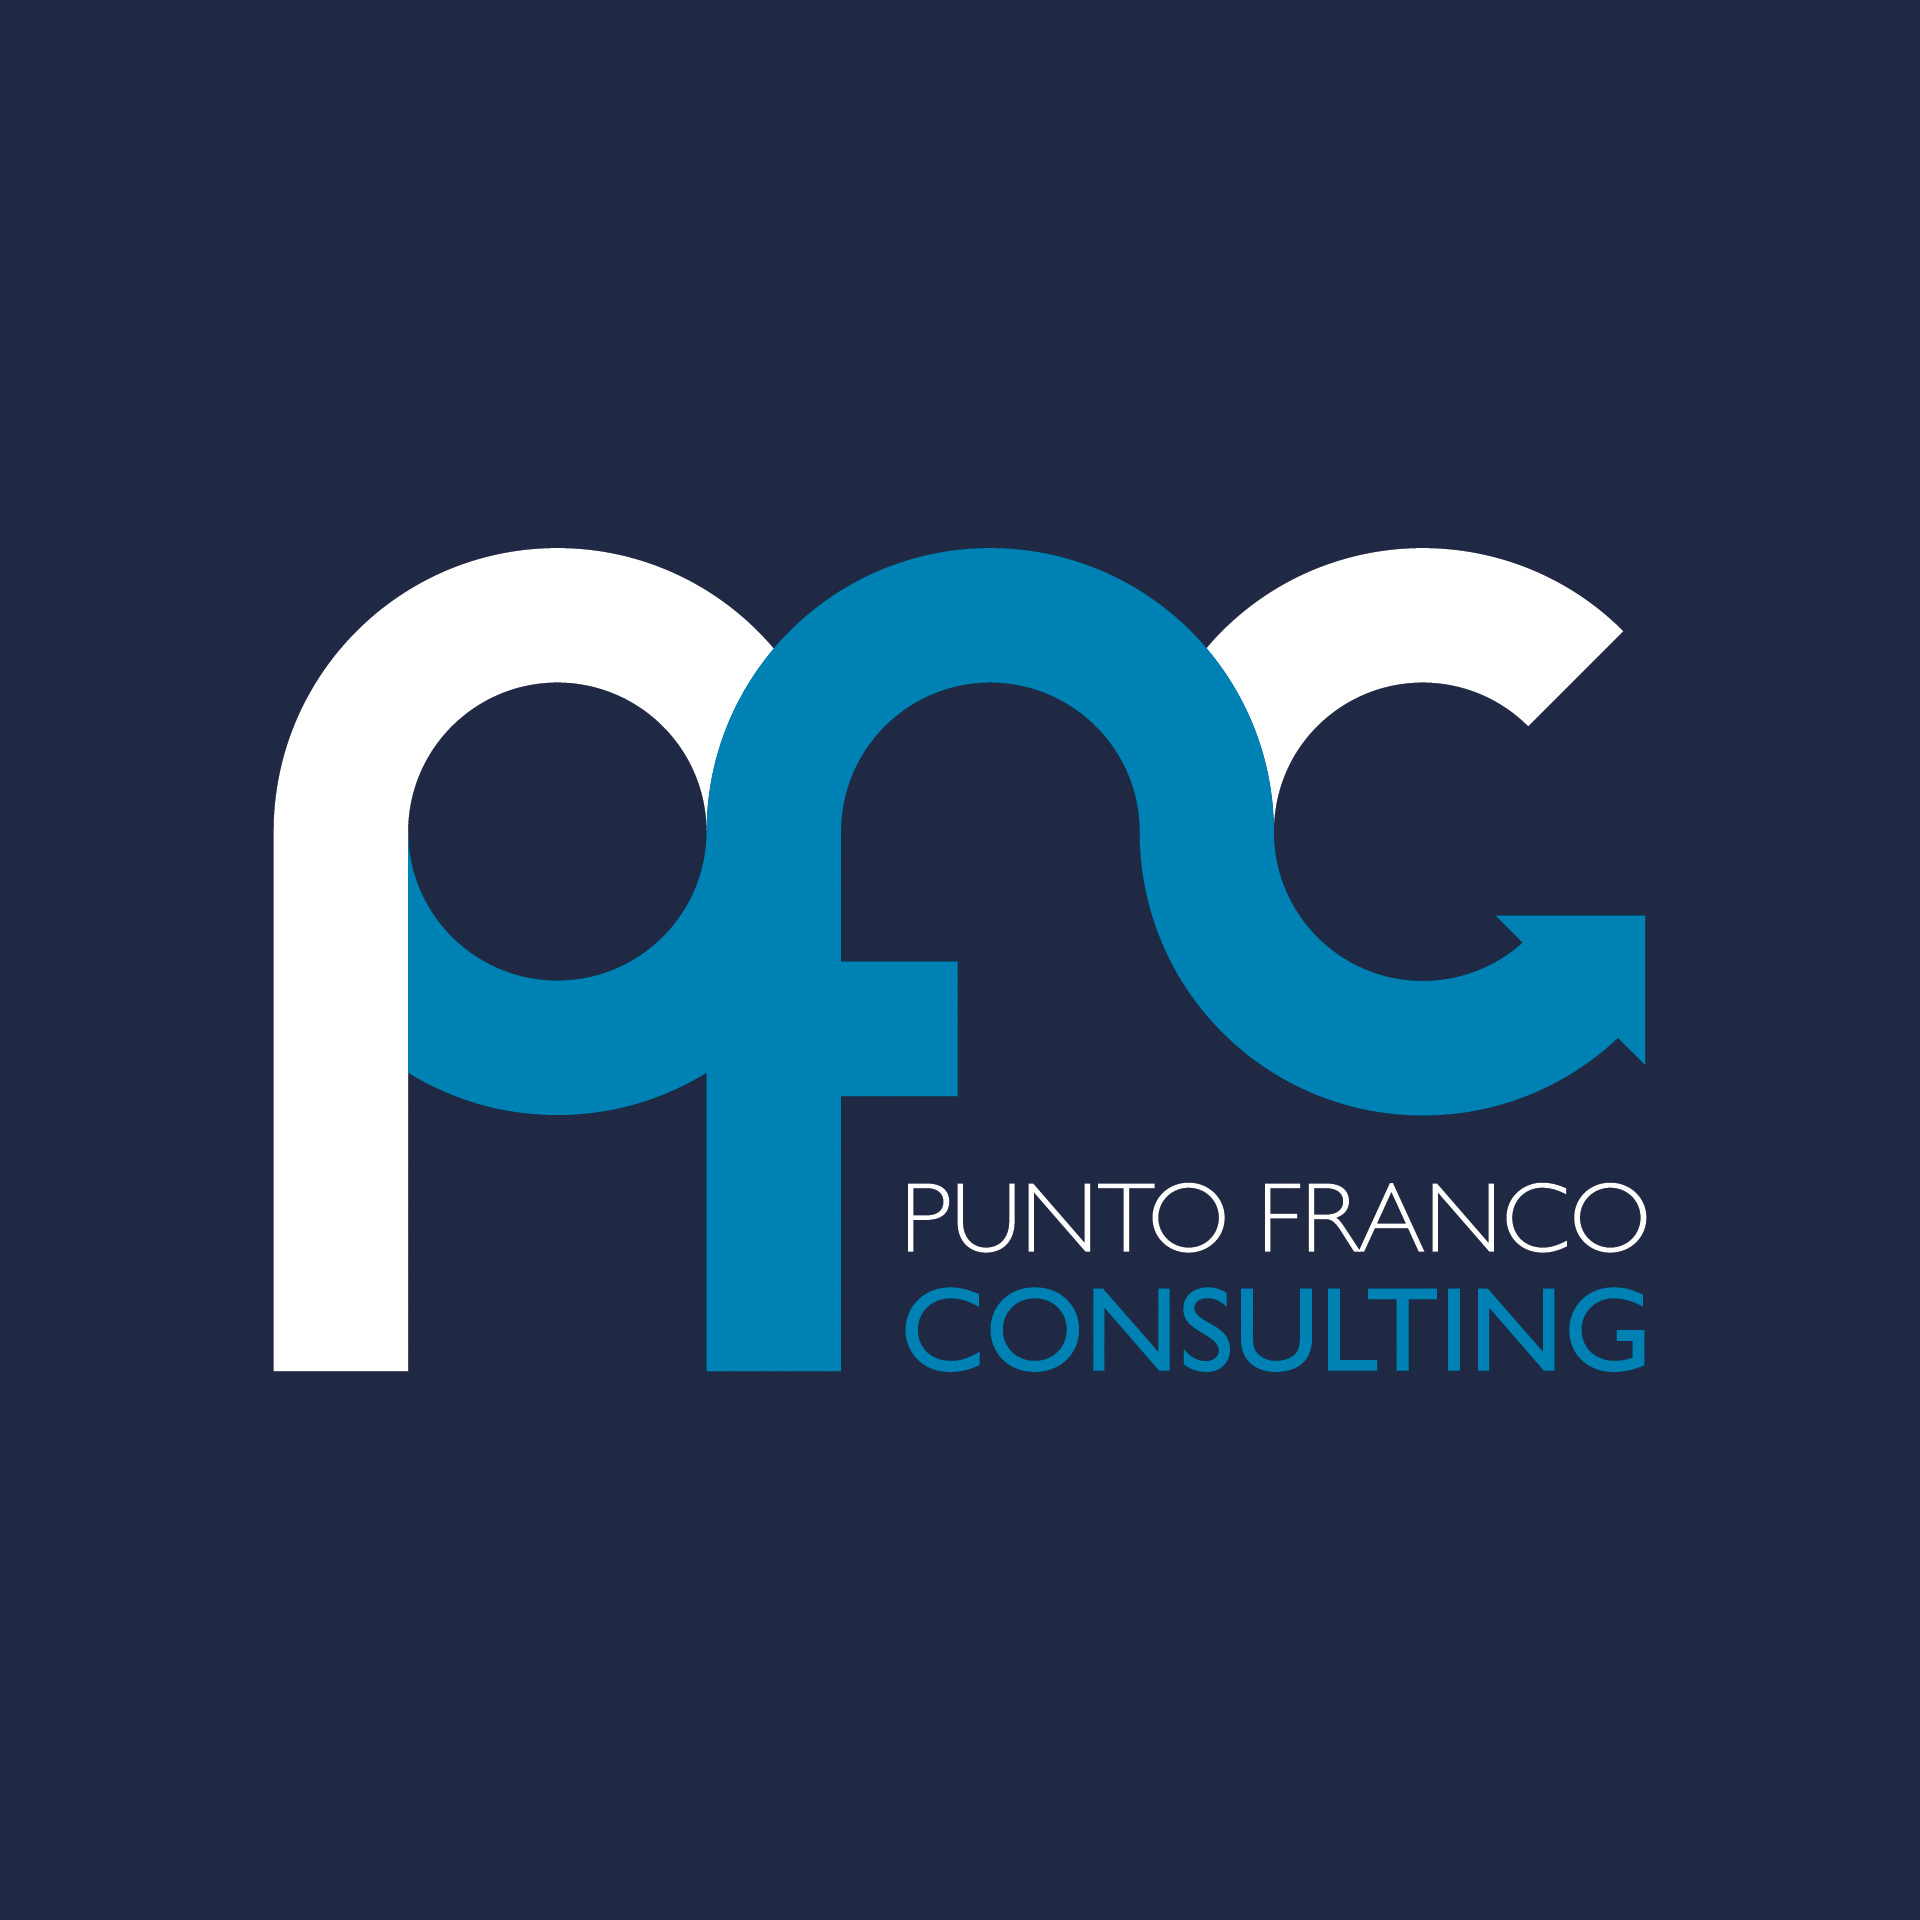 Diseño de Identidad Visual y Logotipo para la marca Punto Franco Consulting